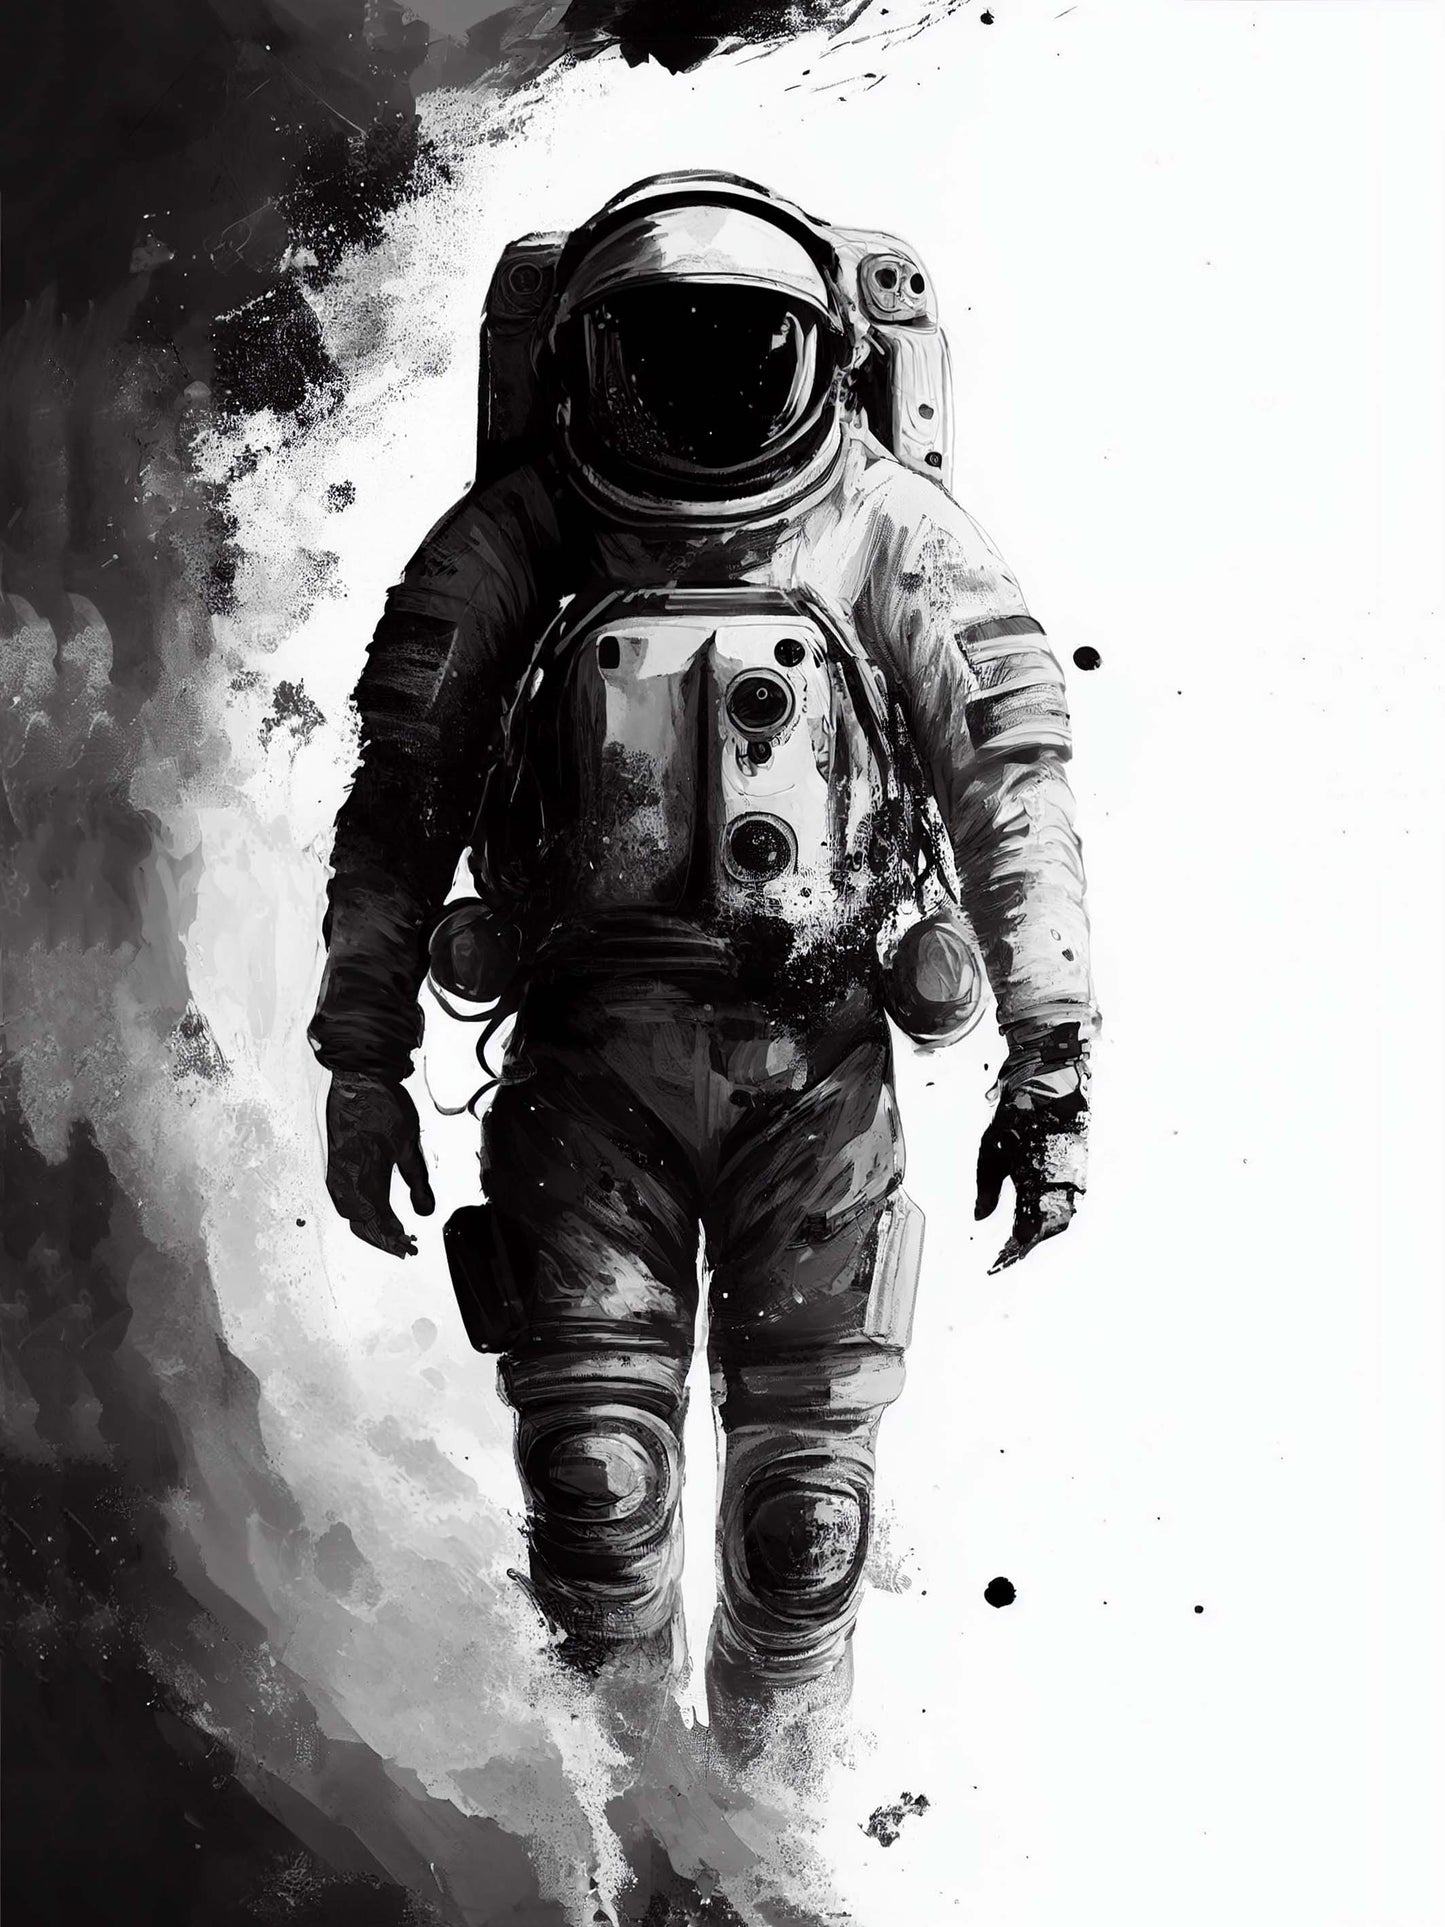 Astronaute espace. Nuage de fumée. Noir et blanc. Exploration spatiale.